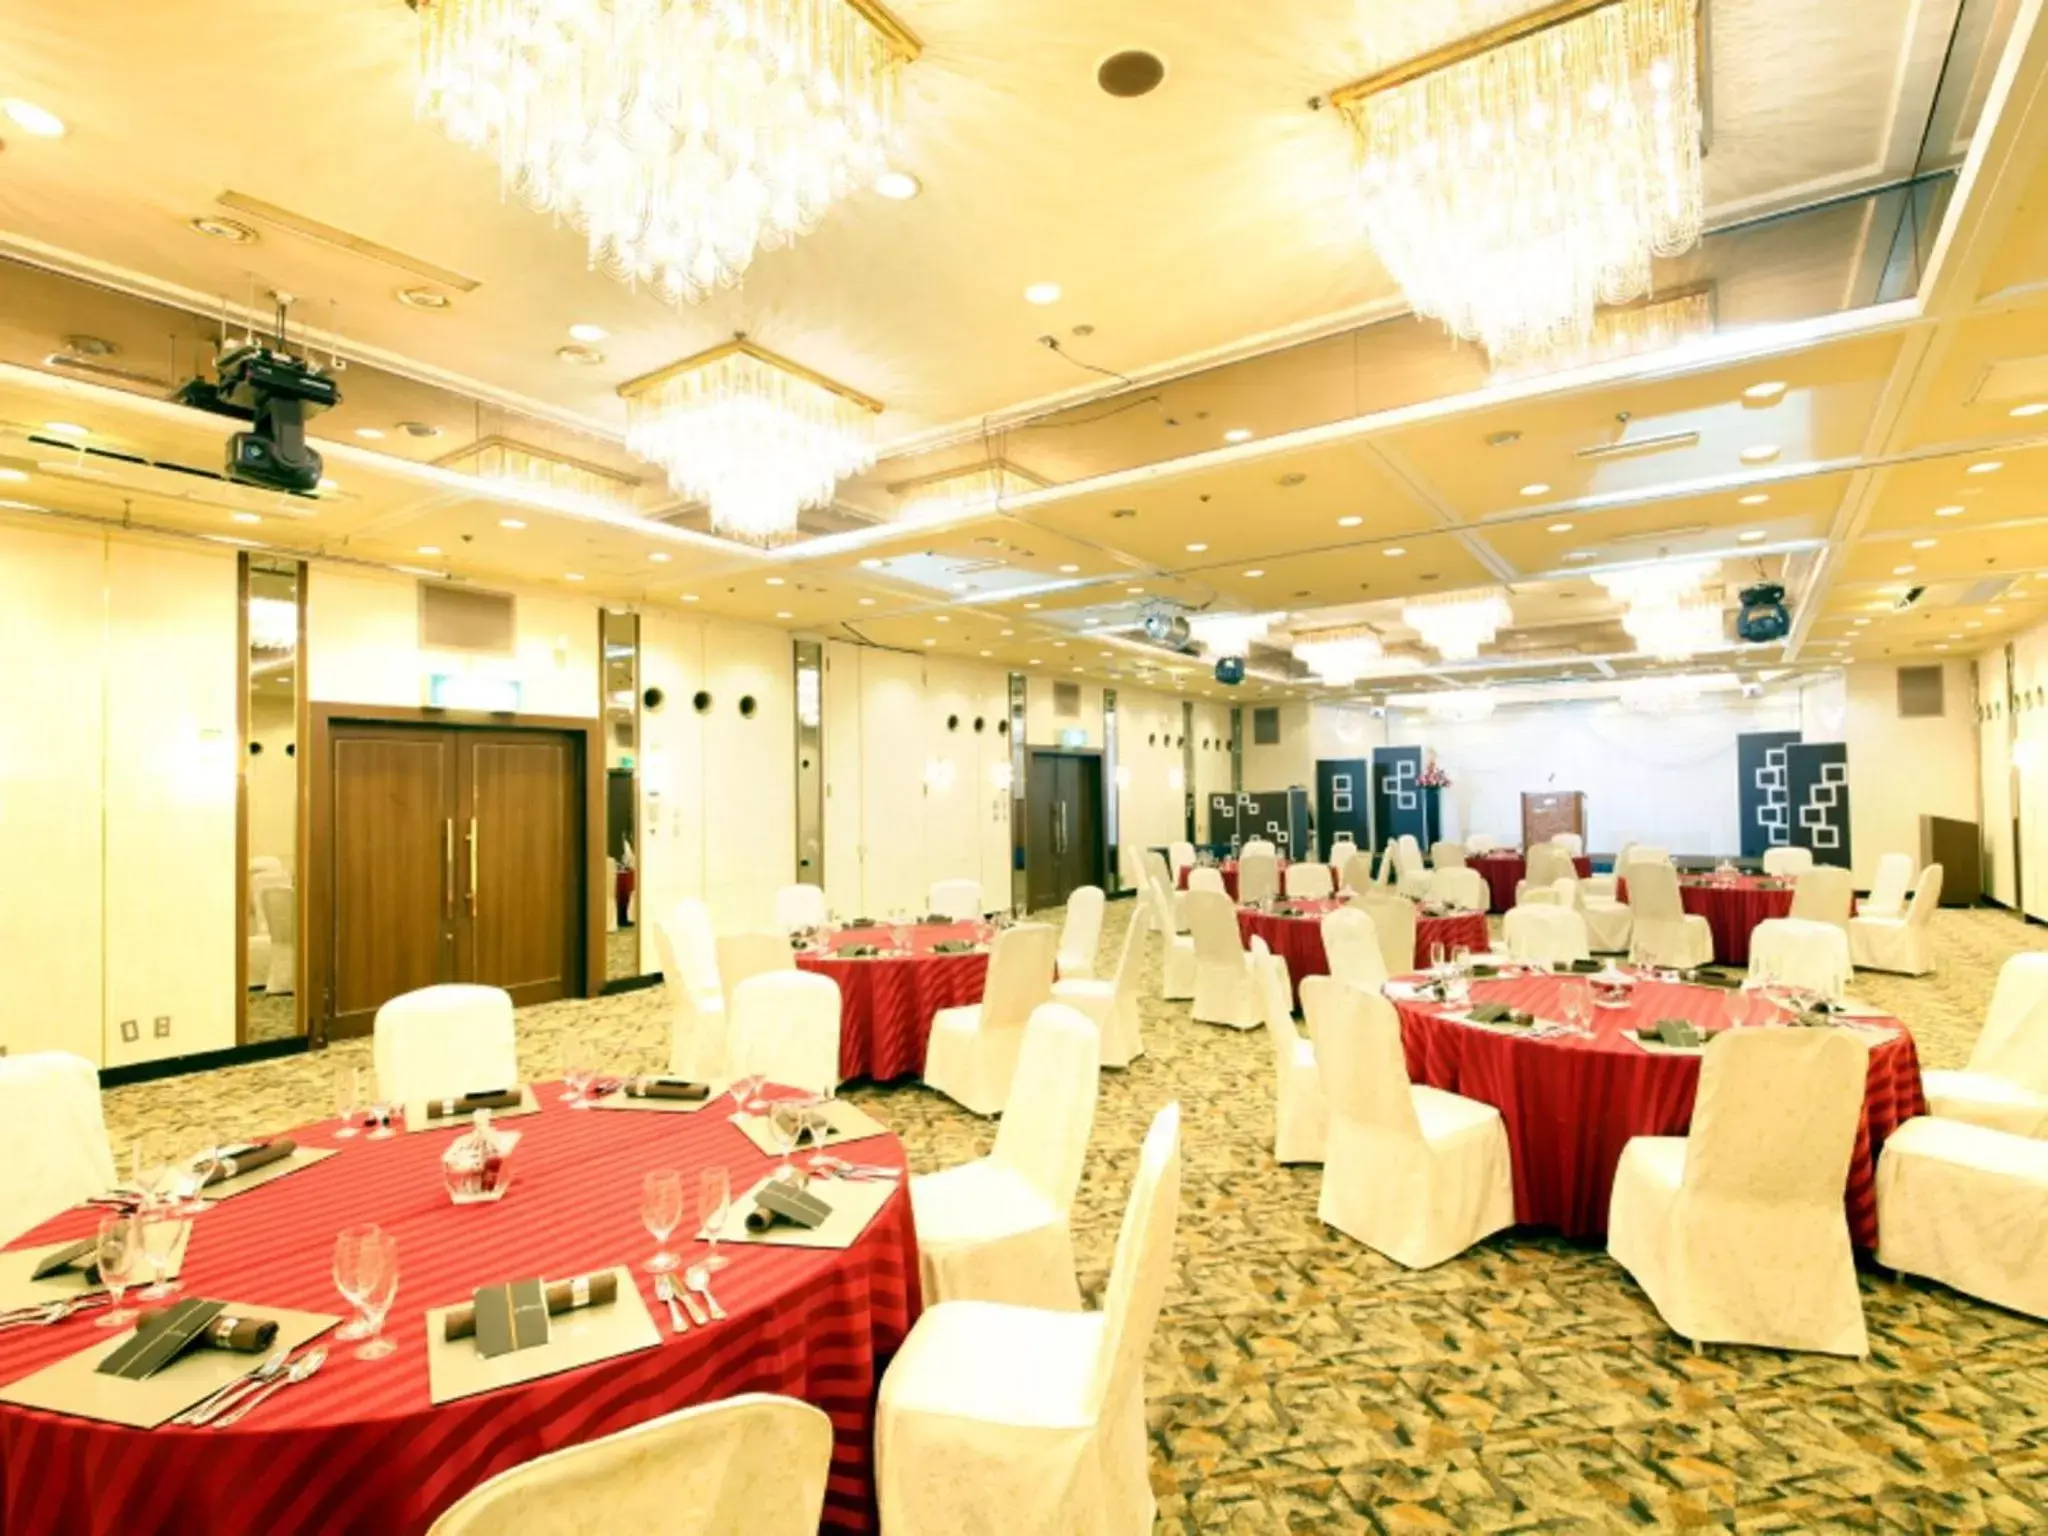 Banquet/Function facilities, Banquet Facilities in Central Hotel Yokosuka